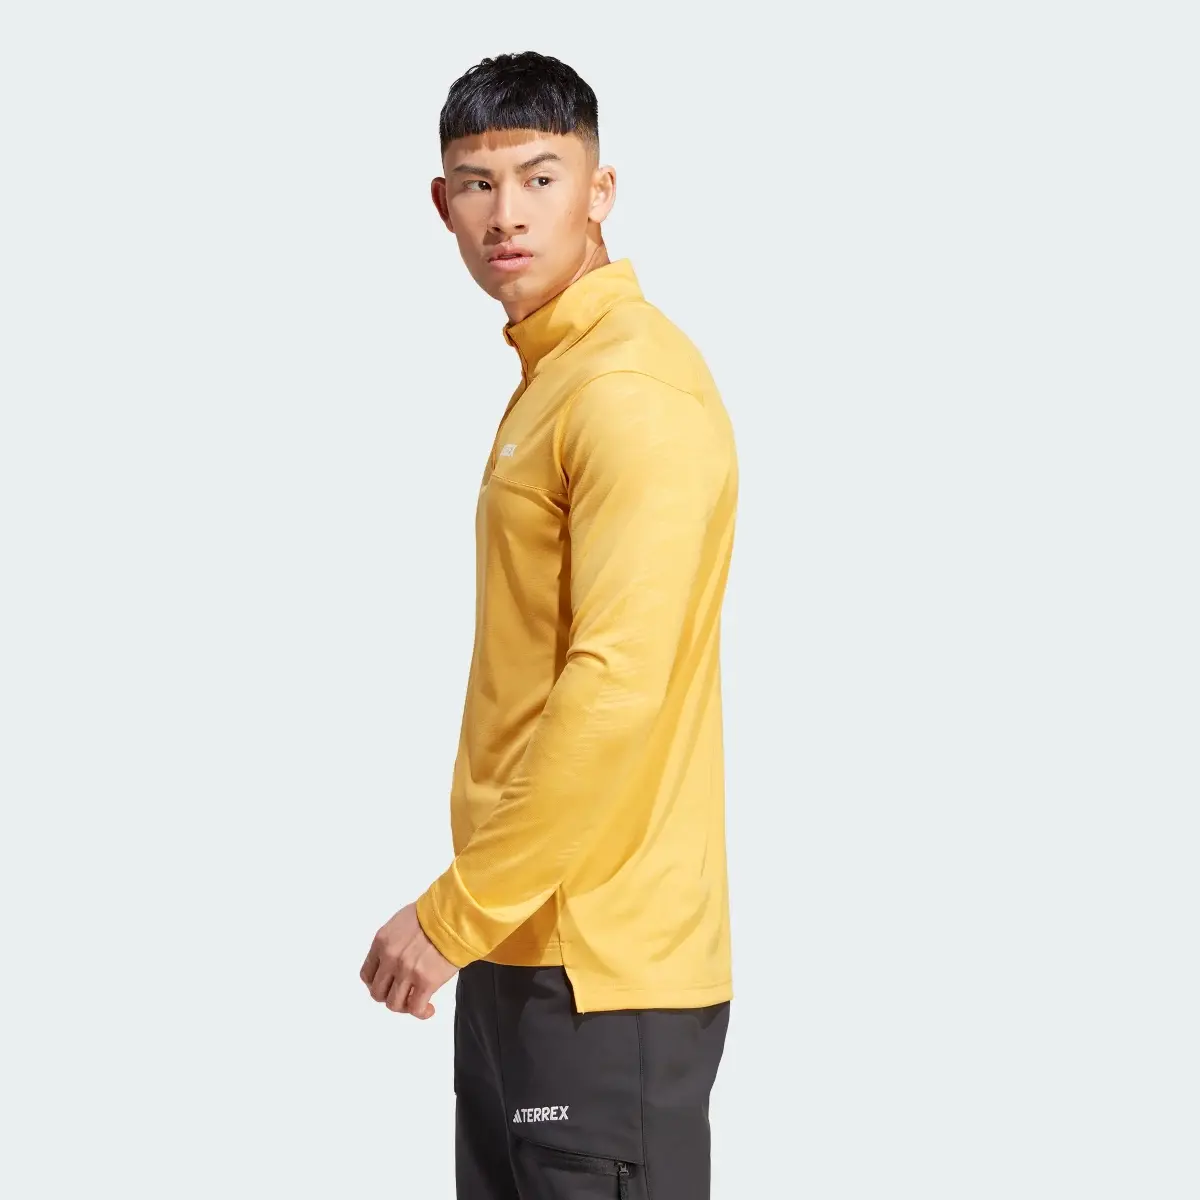 Adidas Camiseta manga larga Terrex Multi Half-Zip. 3